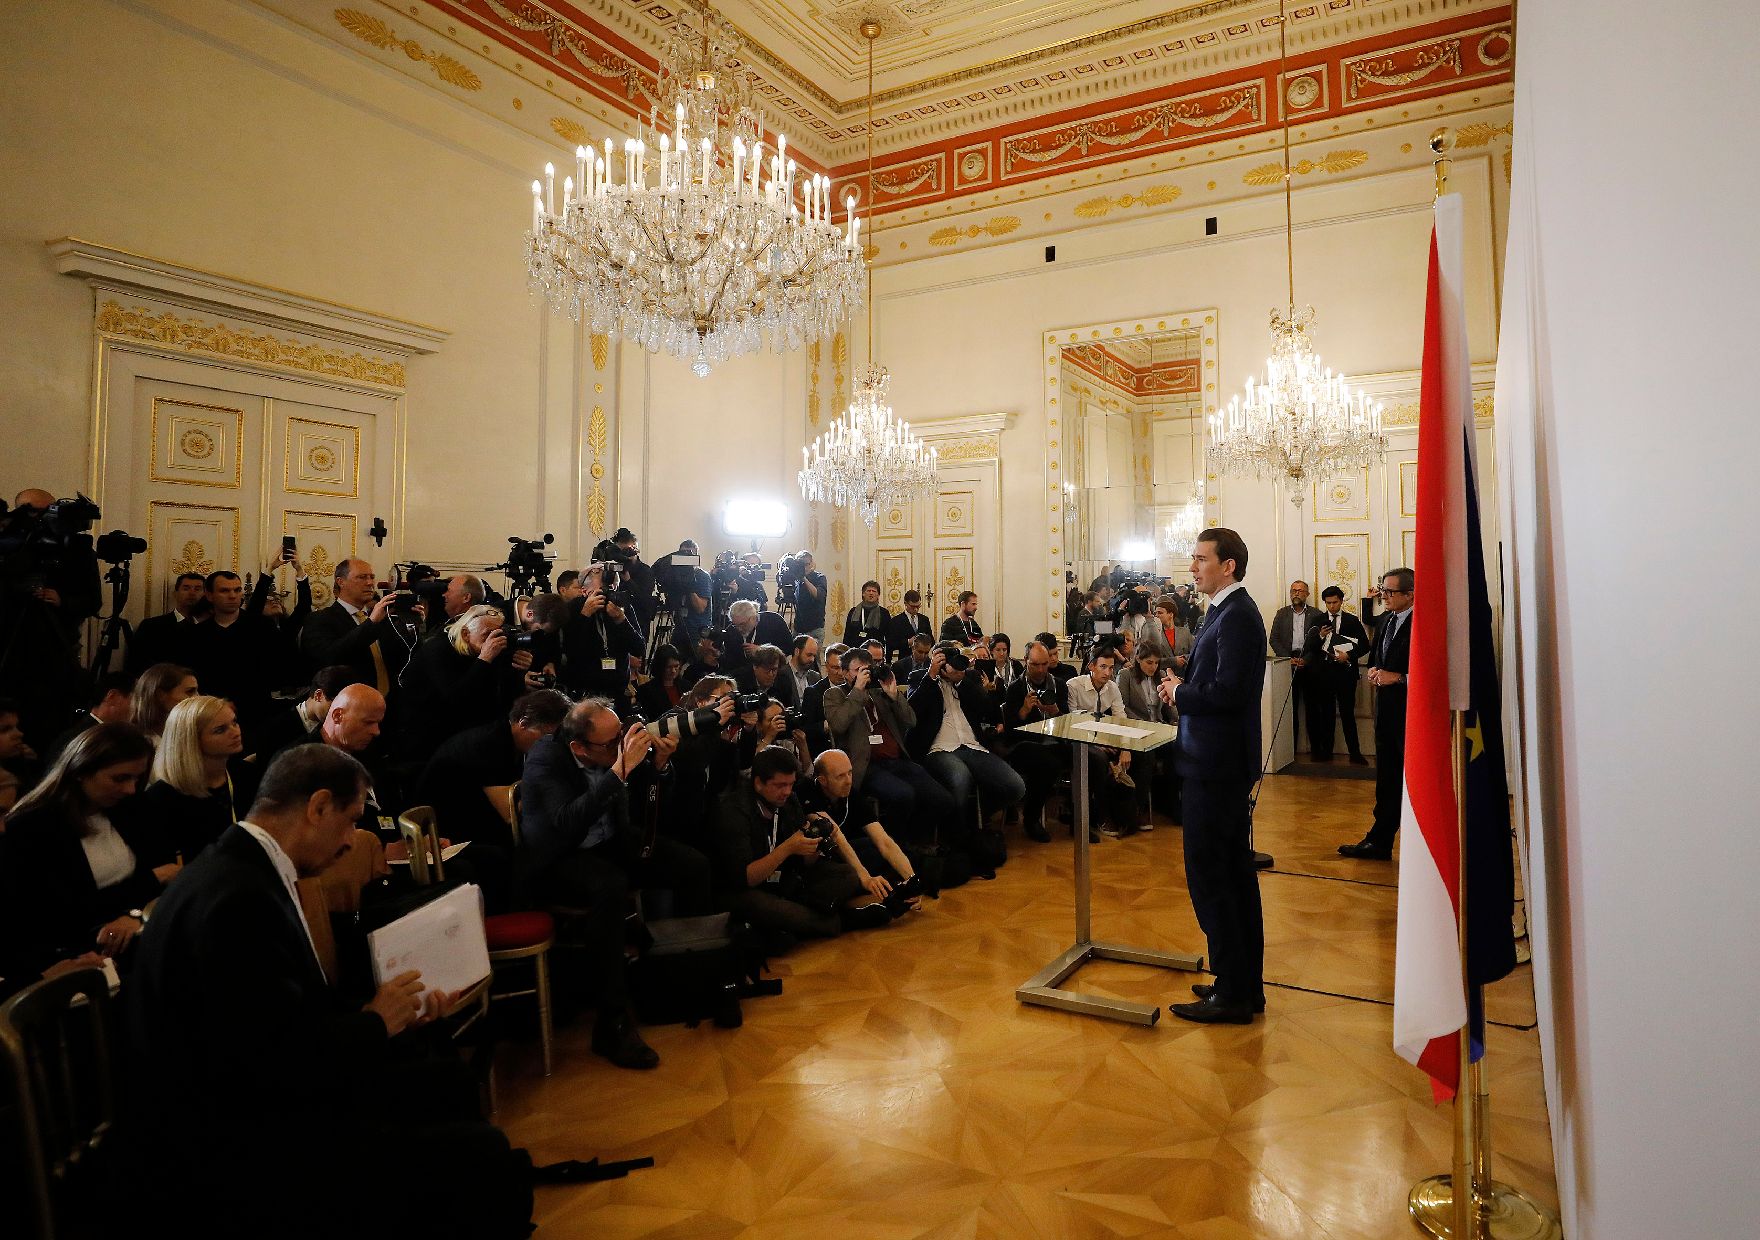 Am 22. Mai 2019 gab Bundeskanzler Sebastian Kurz eine Pressekonferenz nach der Angelobung der neuen Regierung.